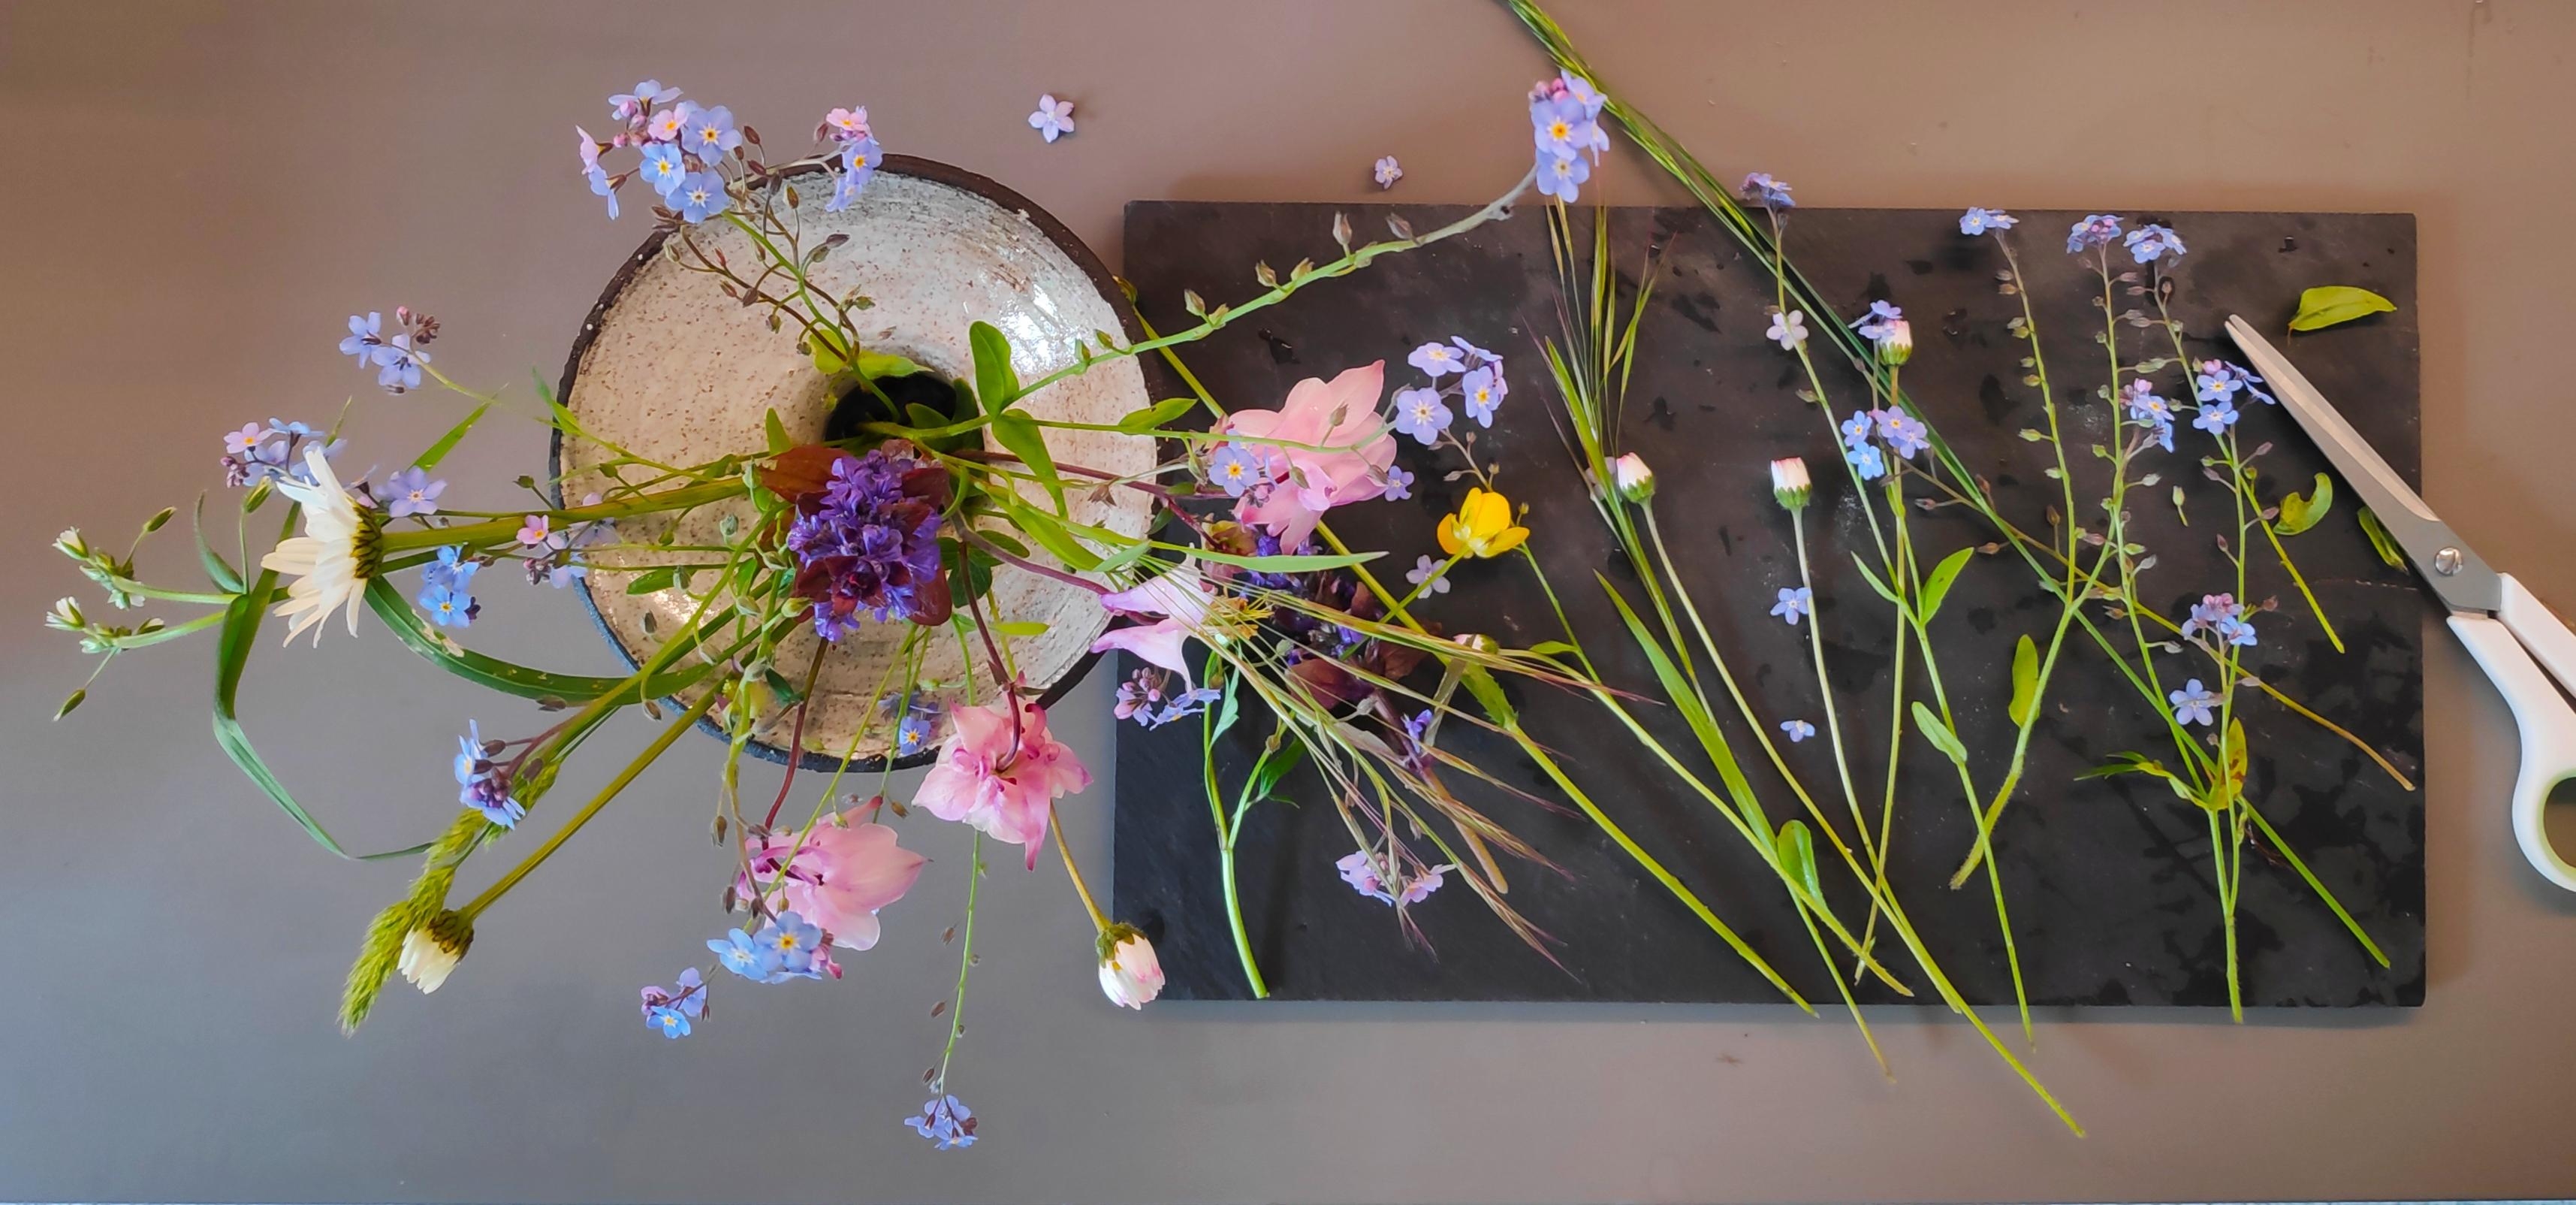 .Es gibt Dinge, denen ich nicht widerstehen kann. Ich hoffe, unsere Gartenwiese verzeiht es mir...
#Blumen #Strauß #Vase